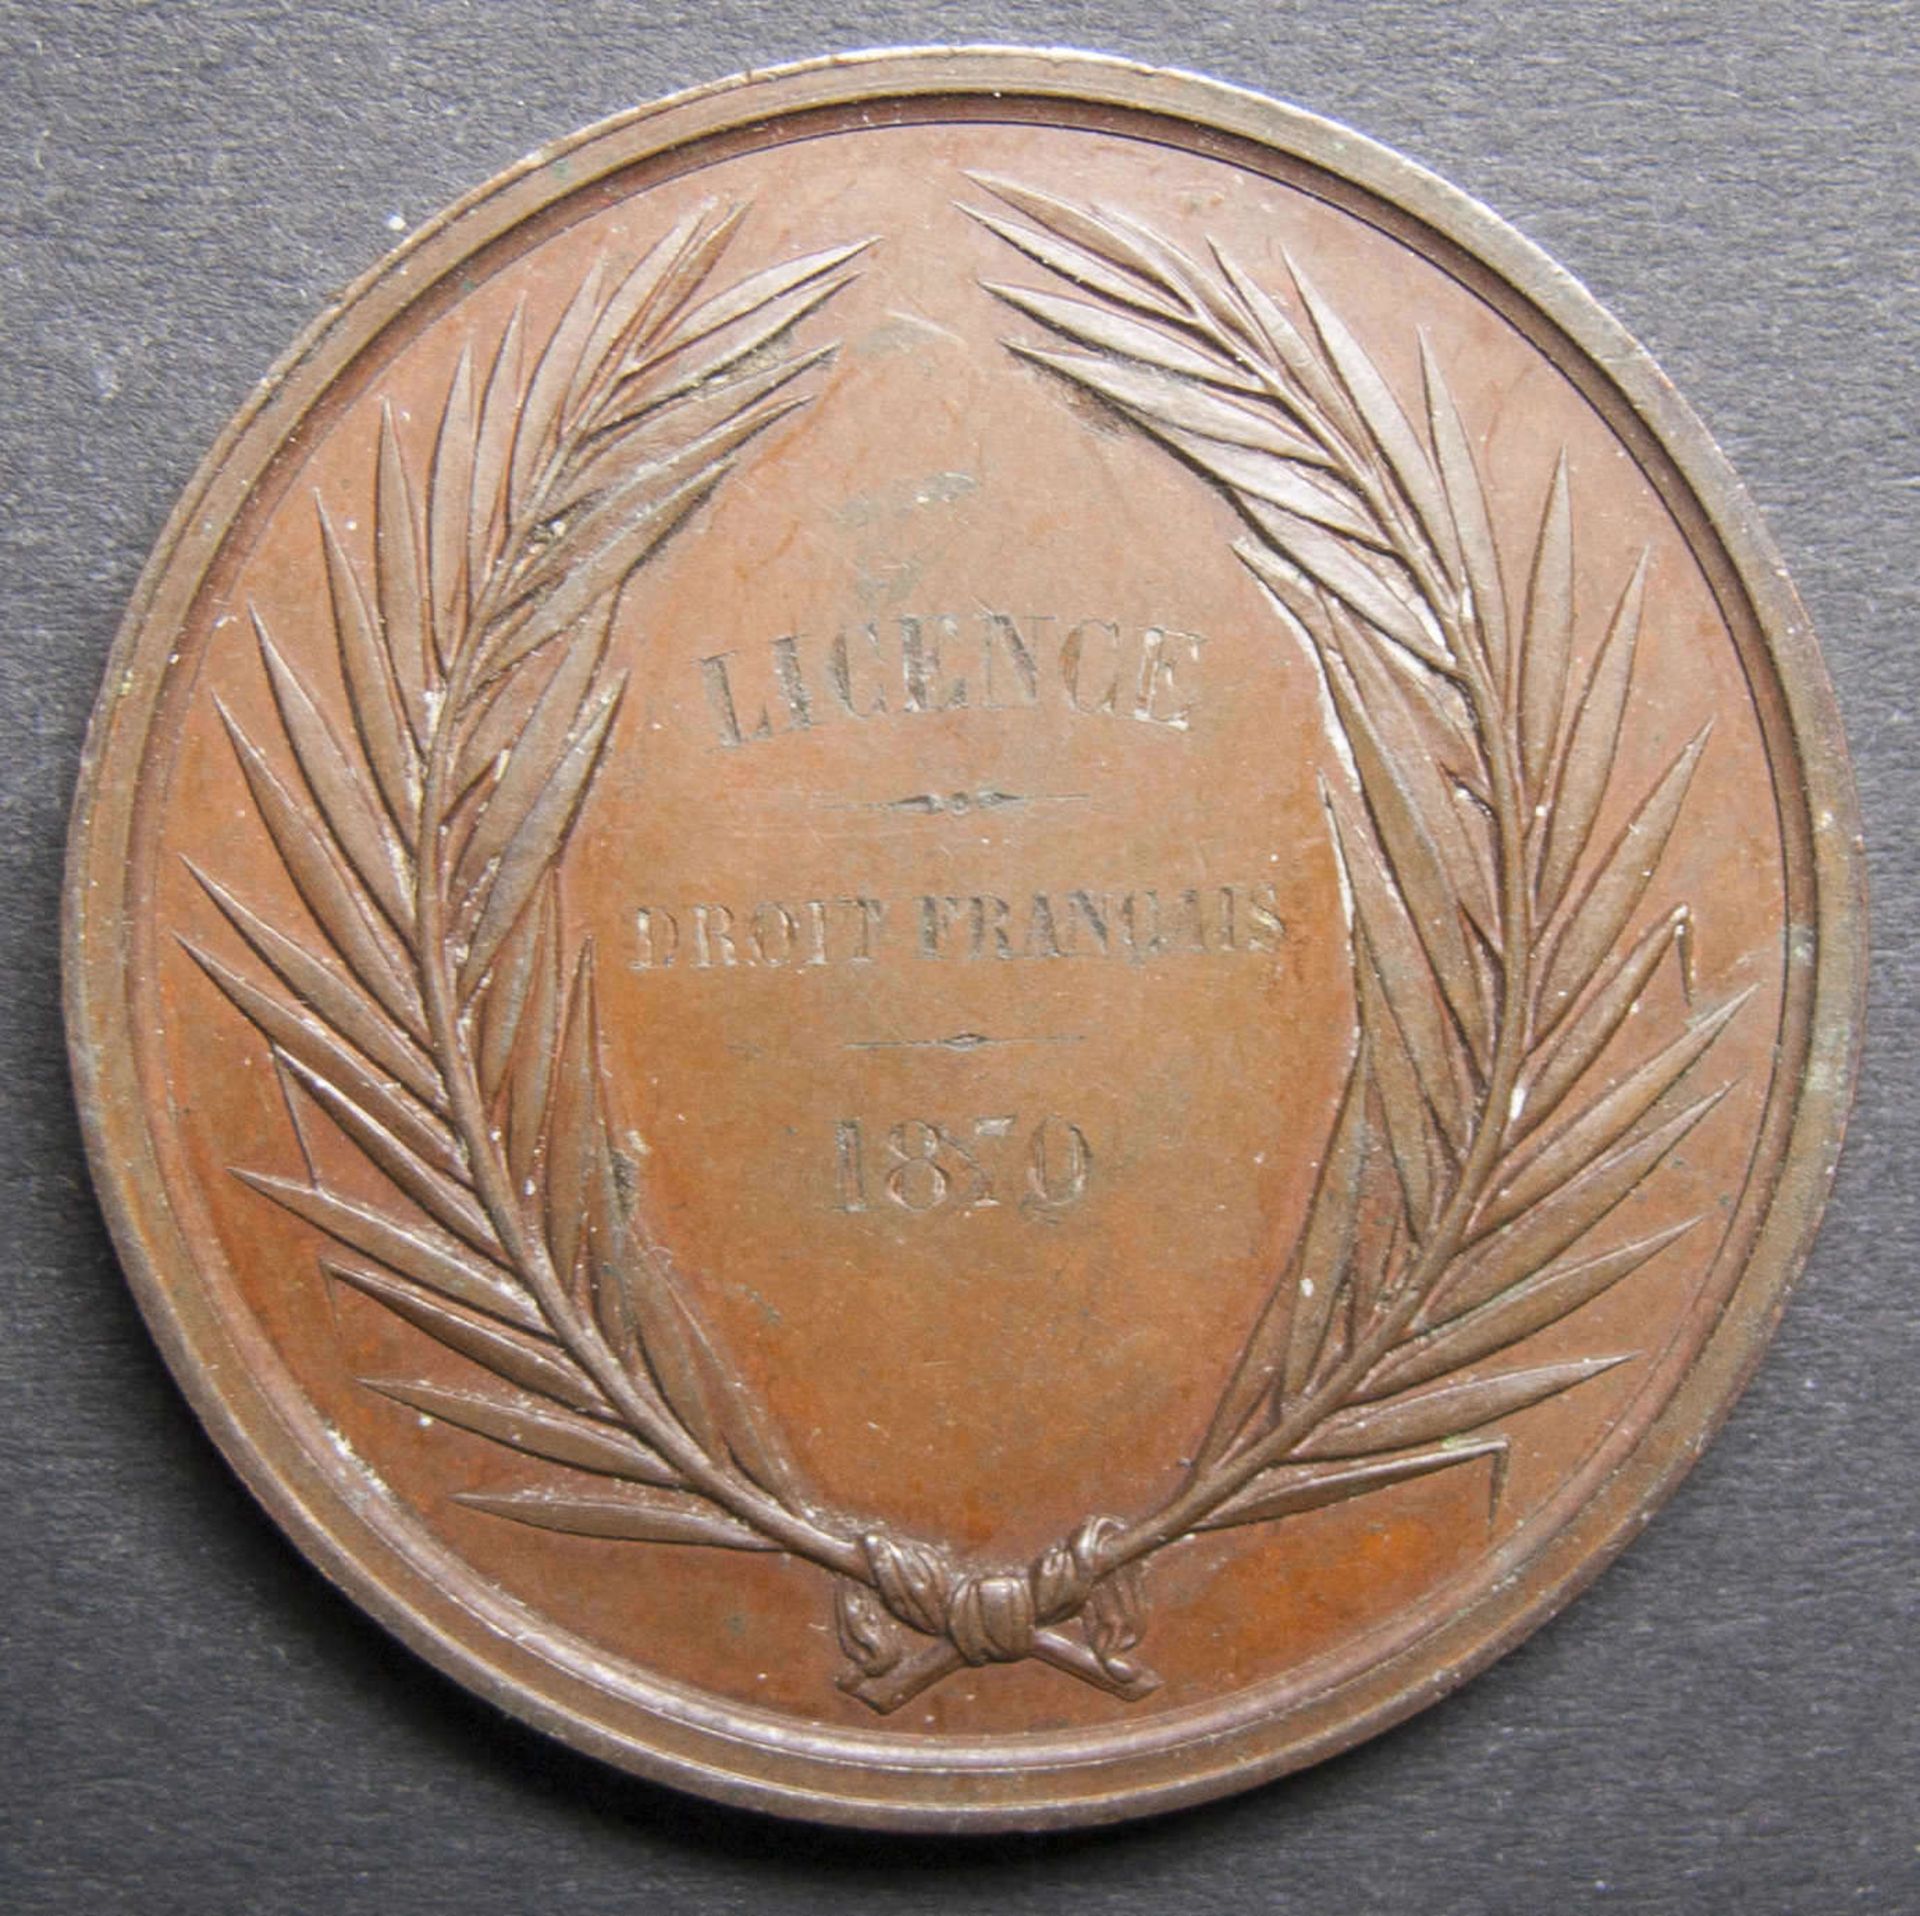 Medaille Licence de Droit francais.1870. Faculte de droit A´Aix. Kupfer.Medal License de Droit - Bild 2 aus 2